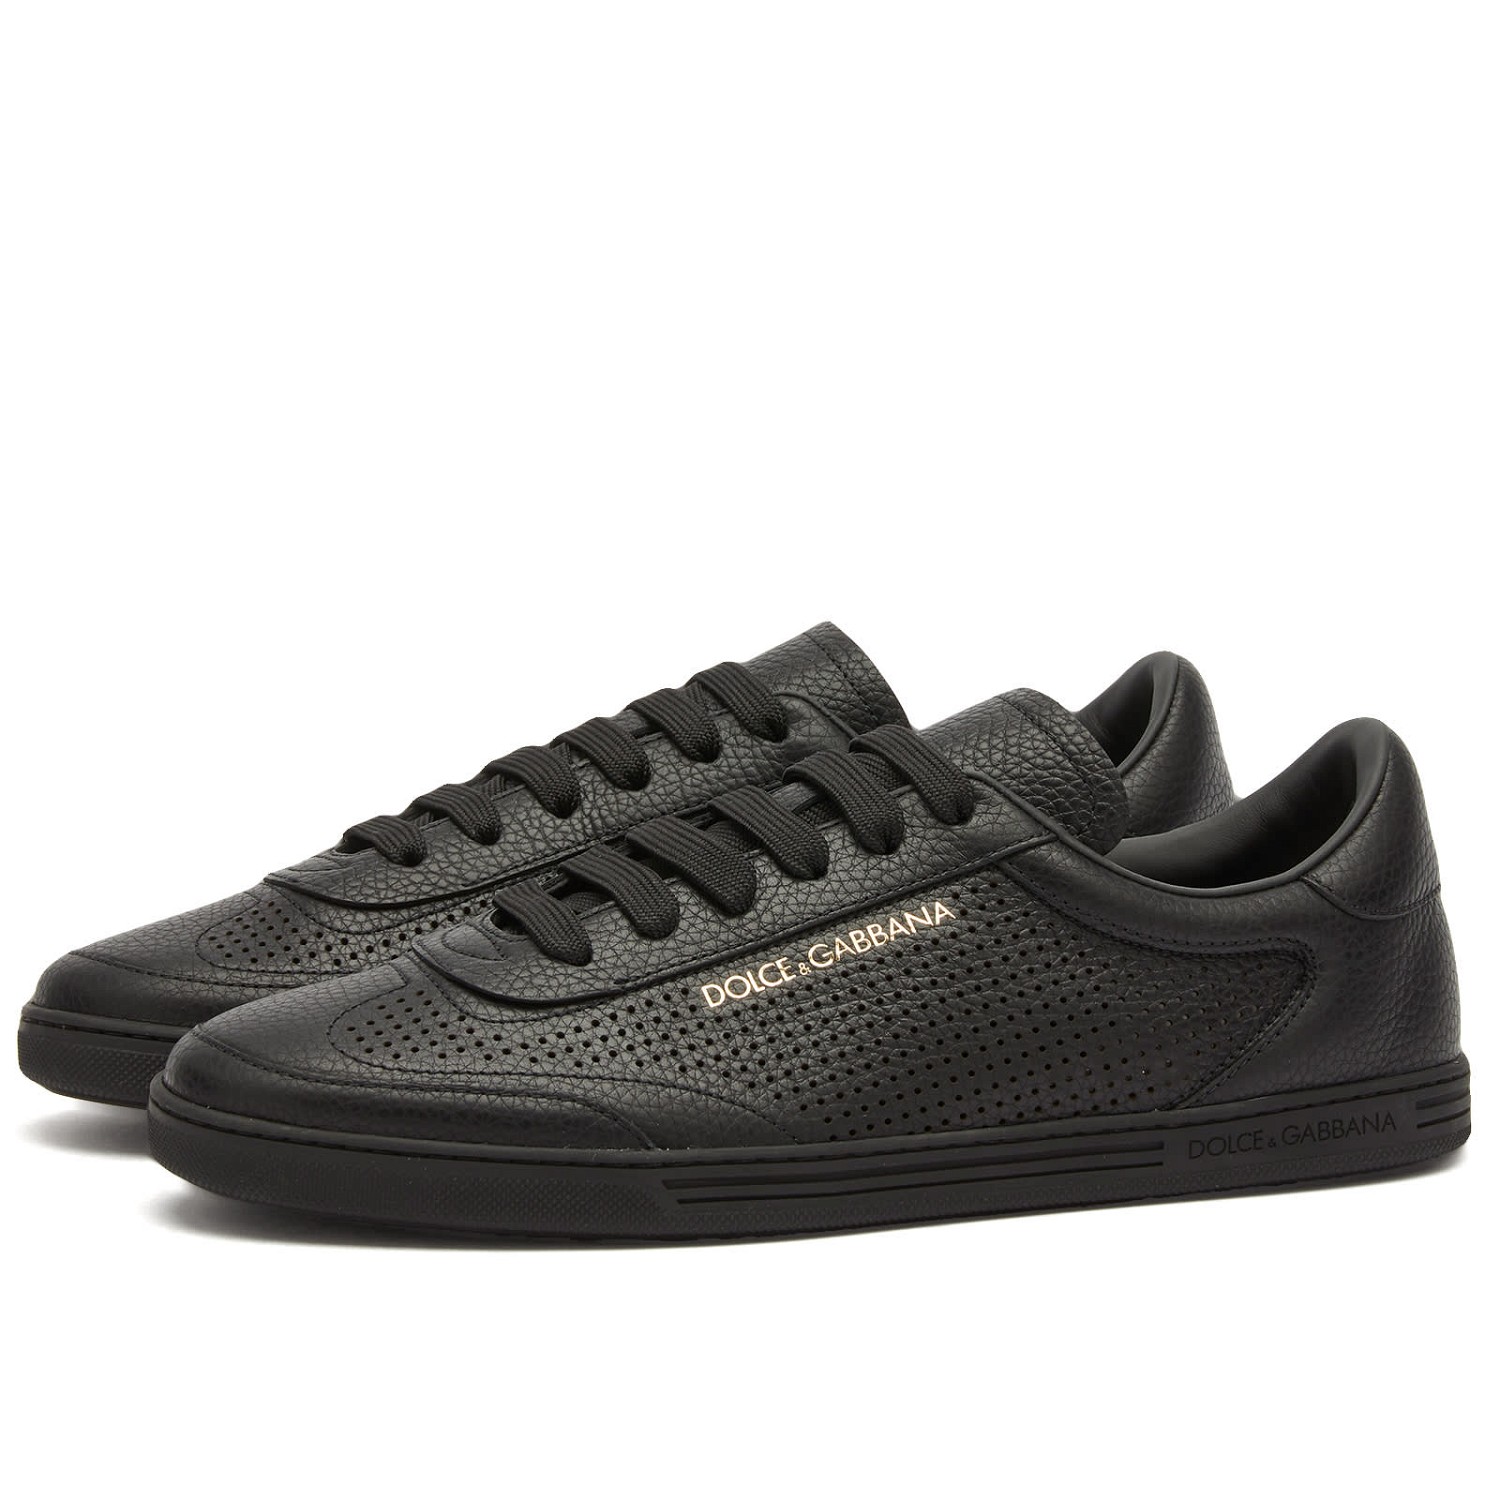 Sneakerek és cipők Dolce & Gabbana Saint Tropez Perforated Leather Sneakers Fekete | CS2256AR837-8B956, 0